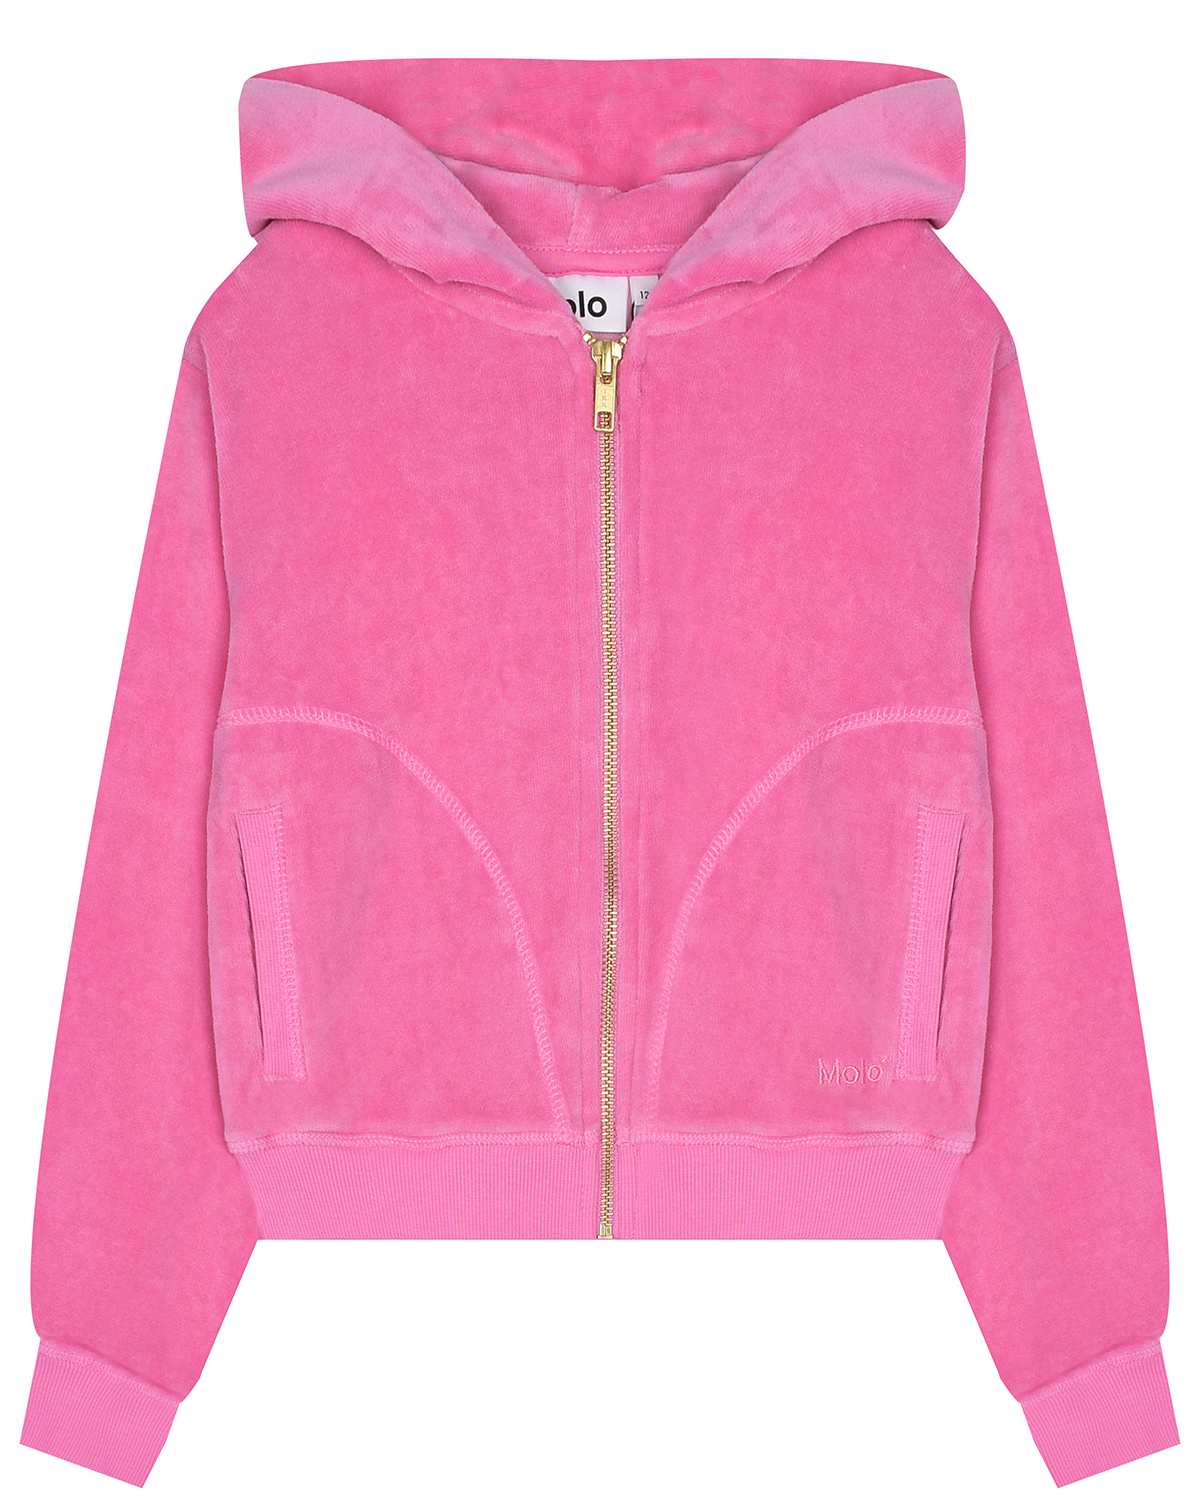 Спортивная куртка из розового велюра Molo, размер 116, цвет розовый